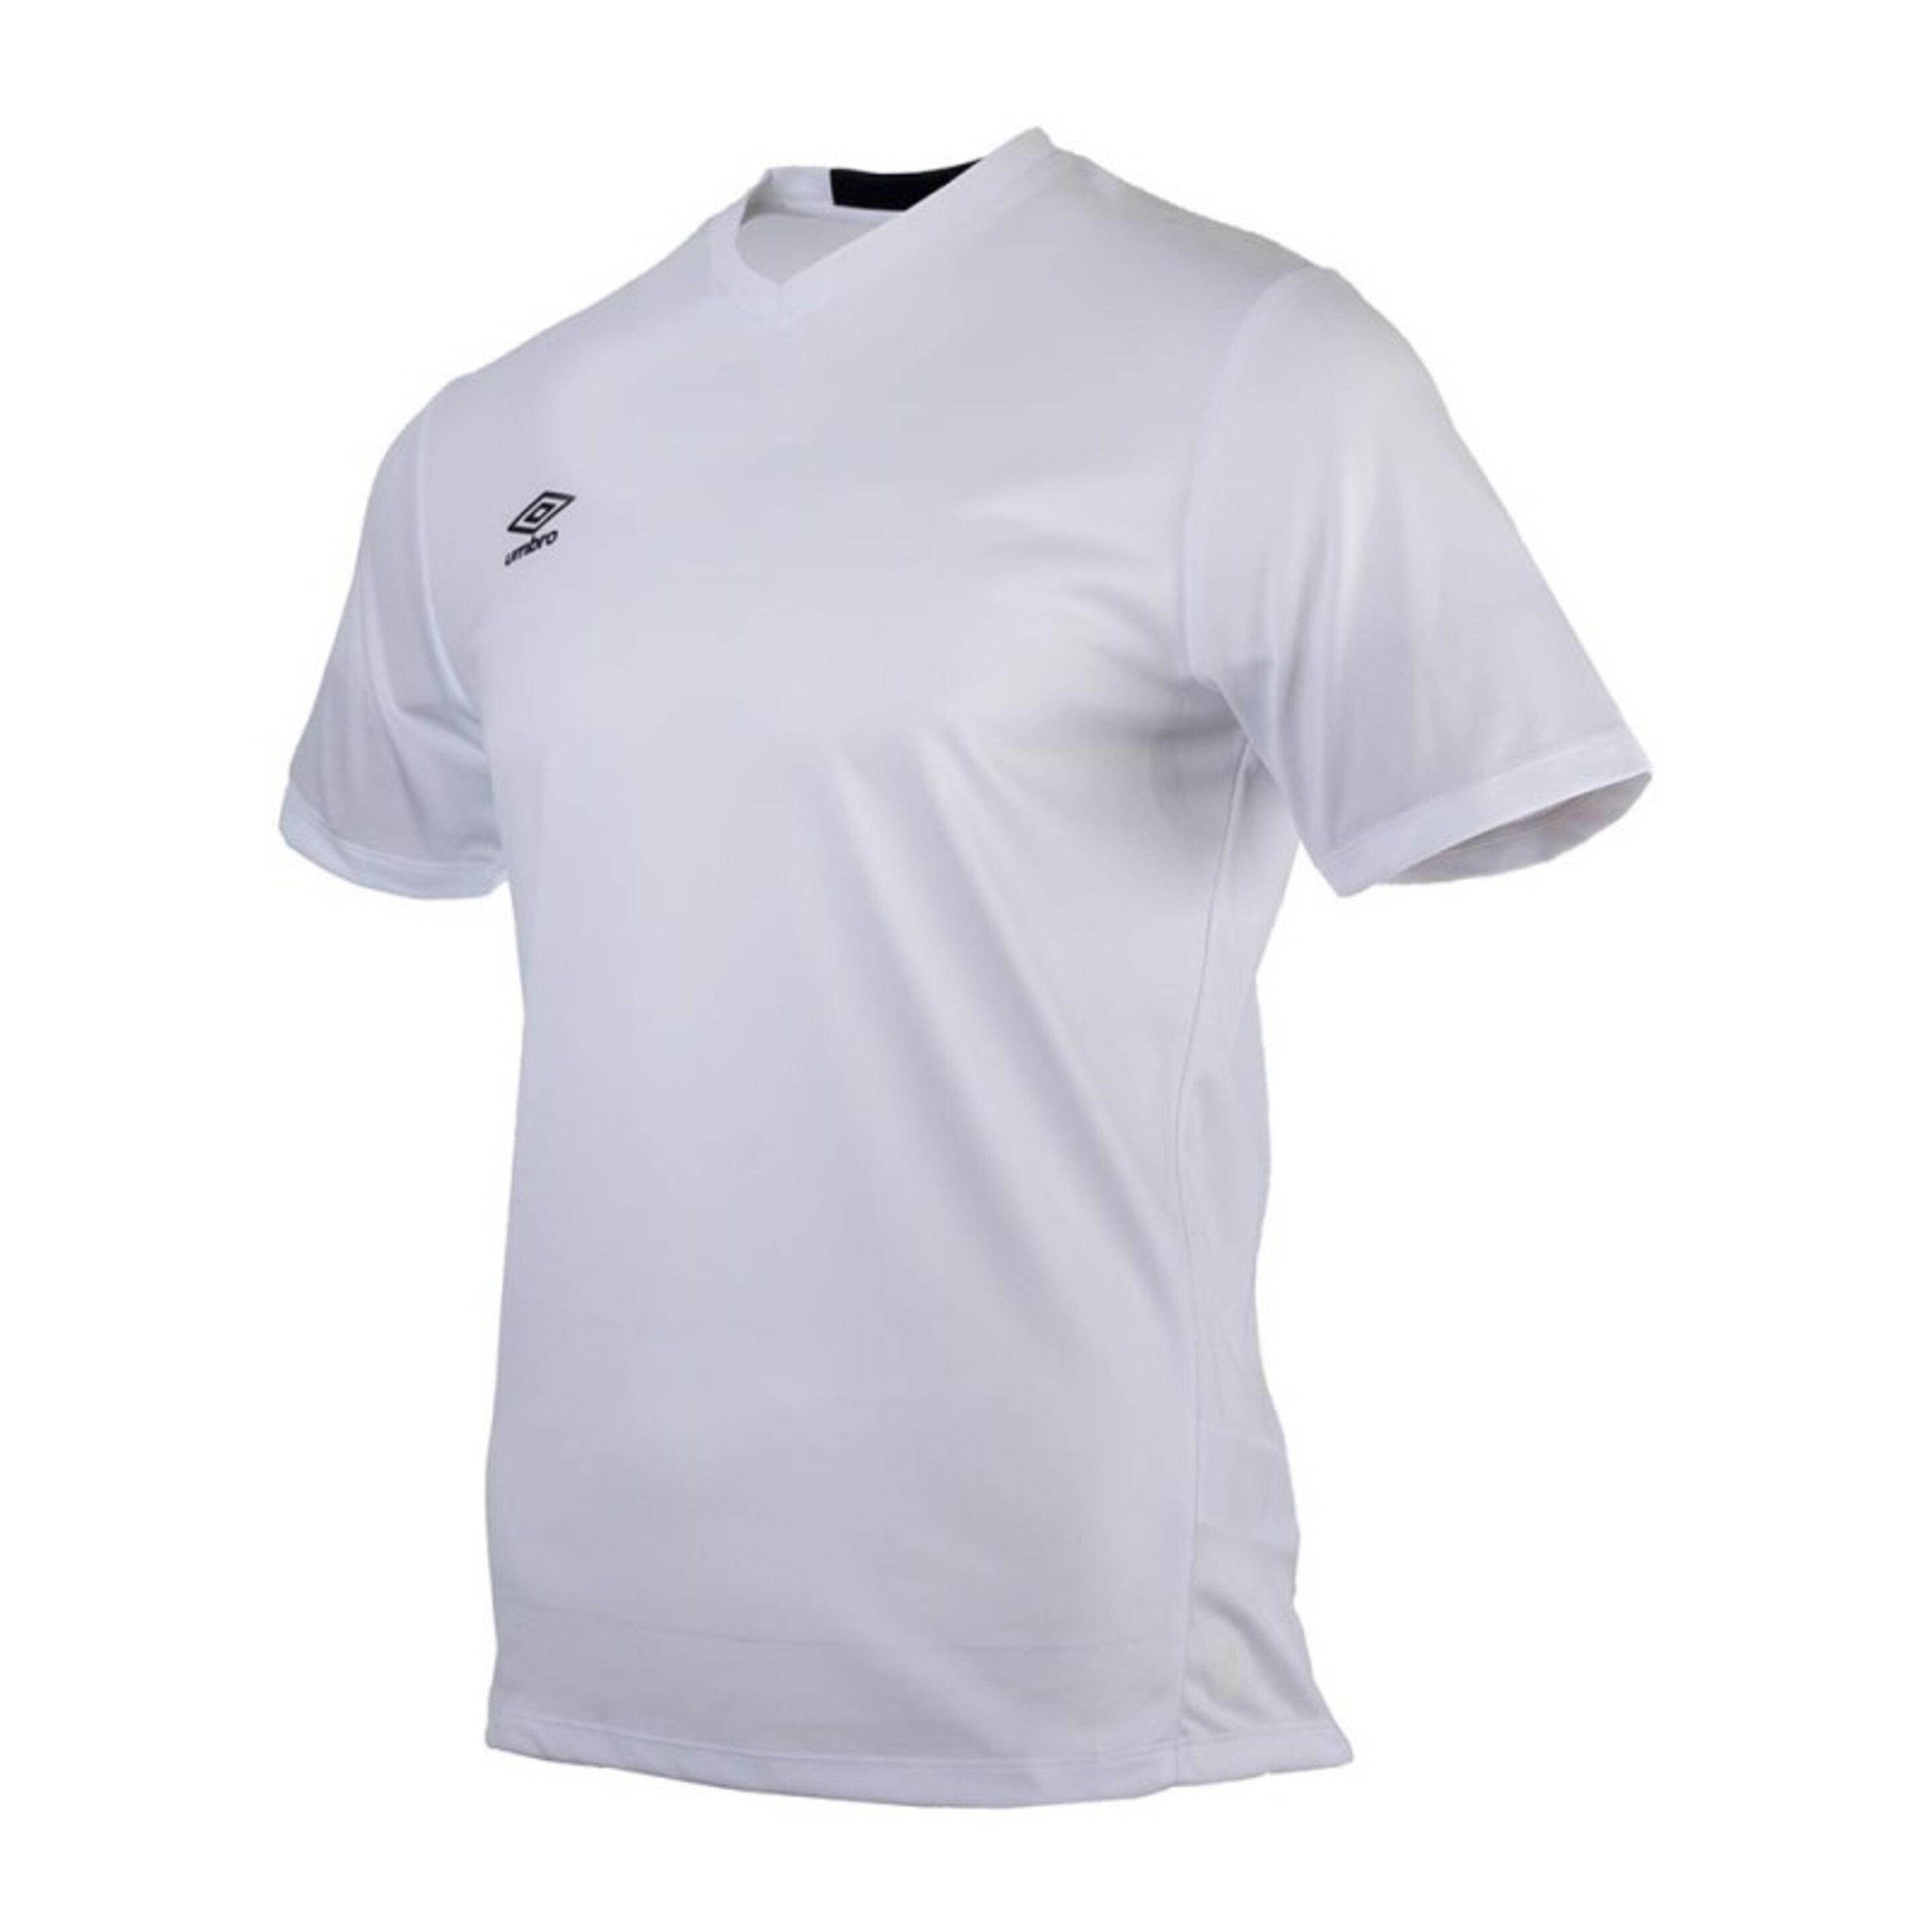 Camiseta Fw Vee Training Jersey Blanca - blanco - 